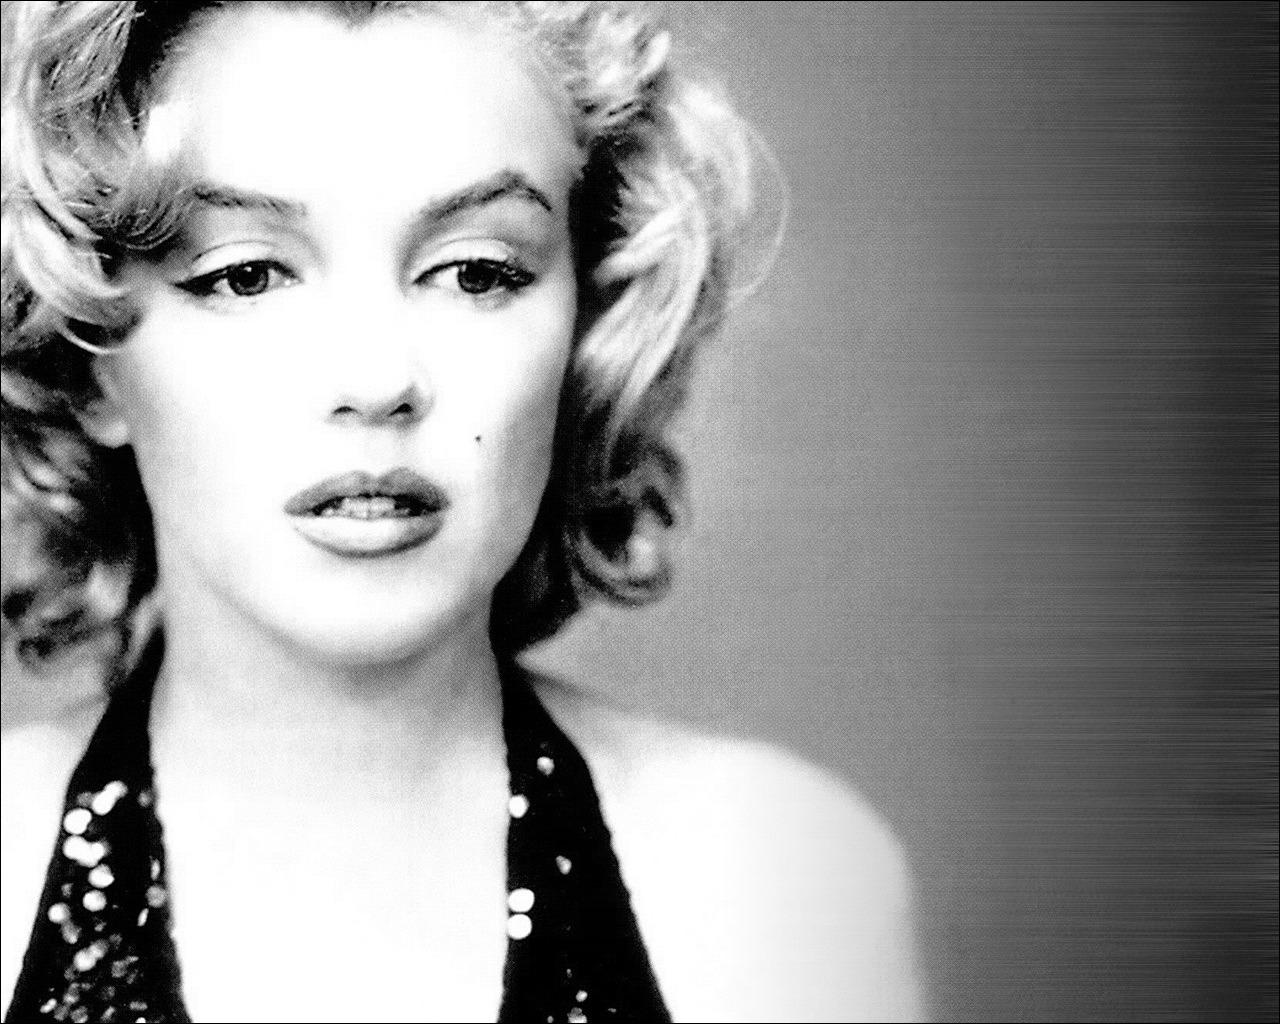 http://1.bp.blogspot.com/-ZumHEvl0yTY/TlSuIpef3SI/AAAAAAAAALo/cCCuM7WbTwc/s1600/136991-Marilyn-Monroe-Screen-Saver.jpg